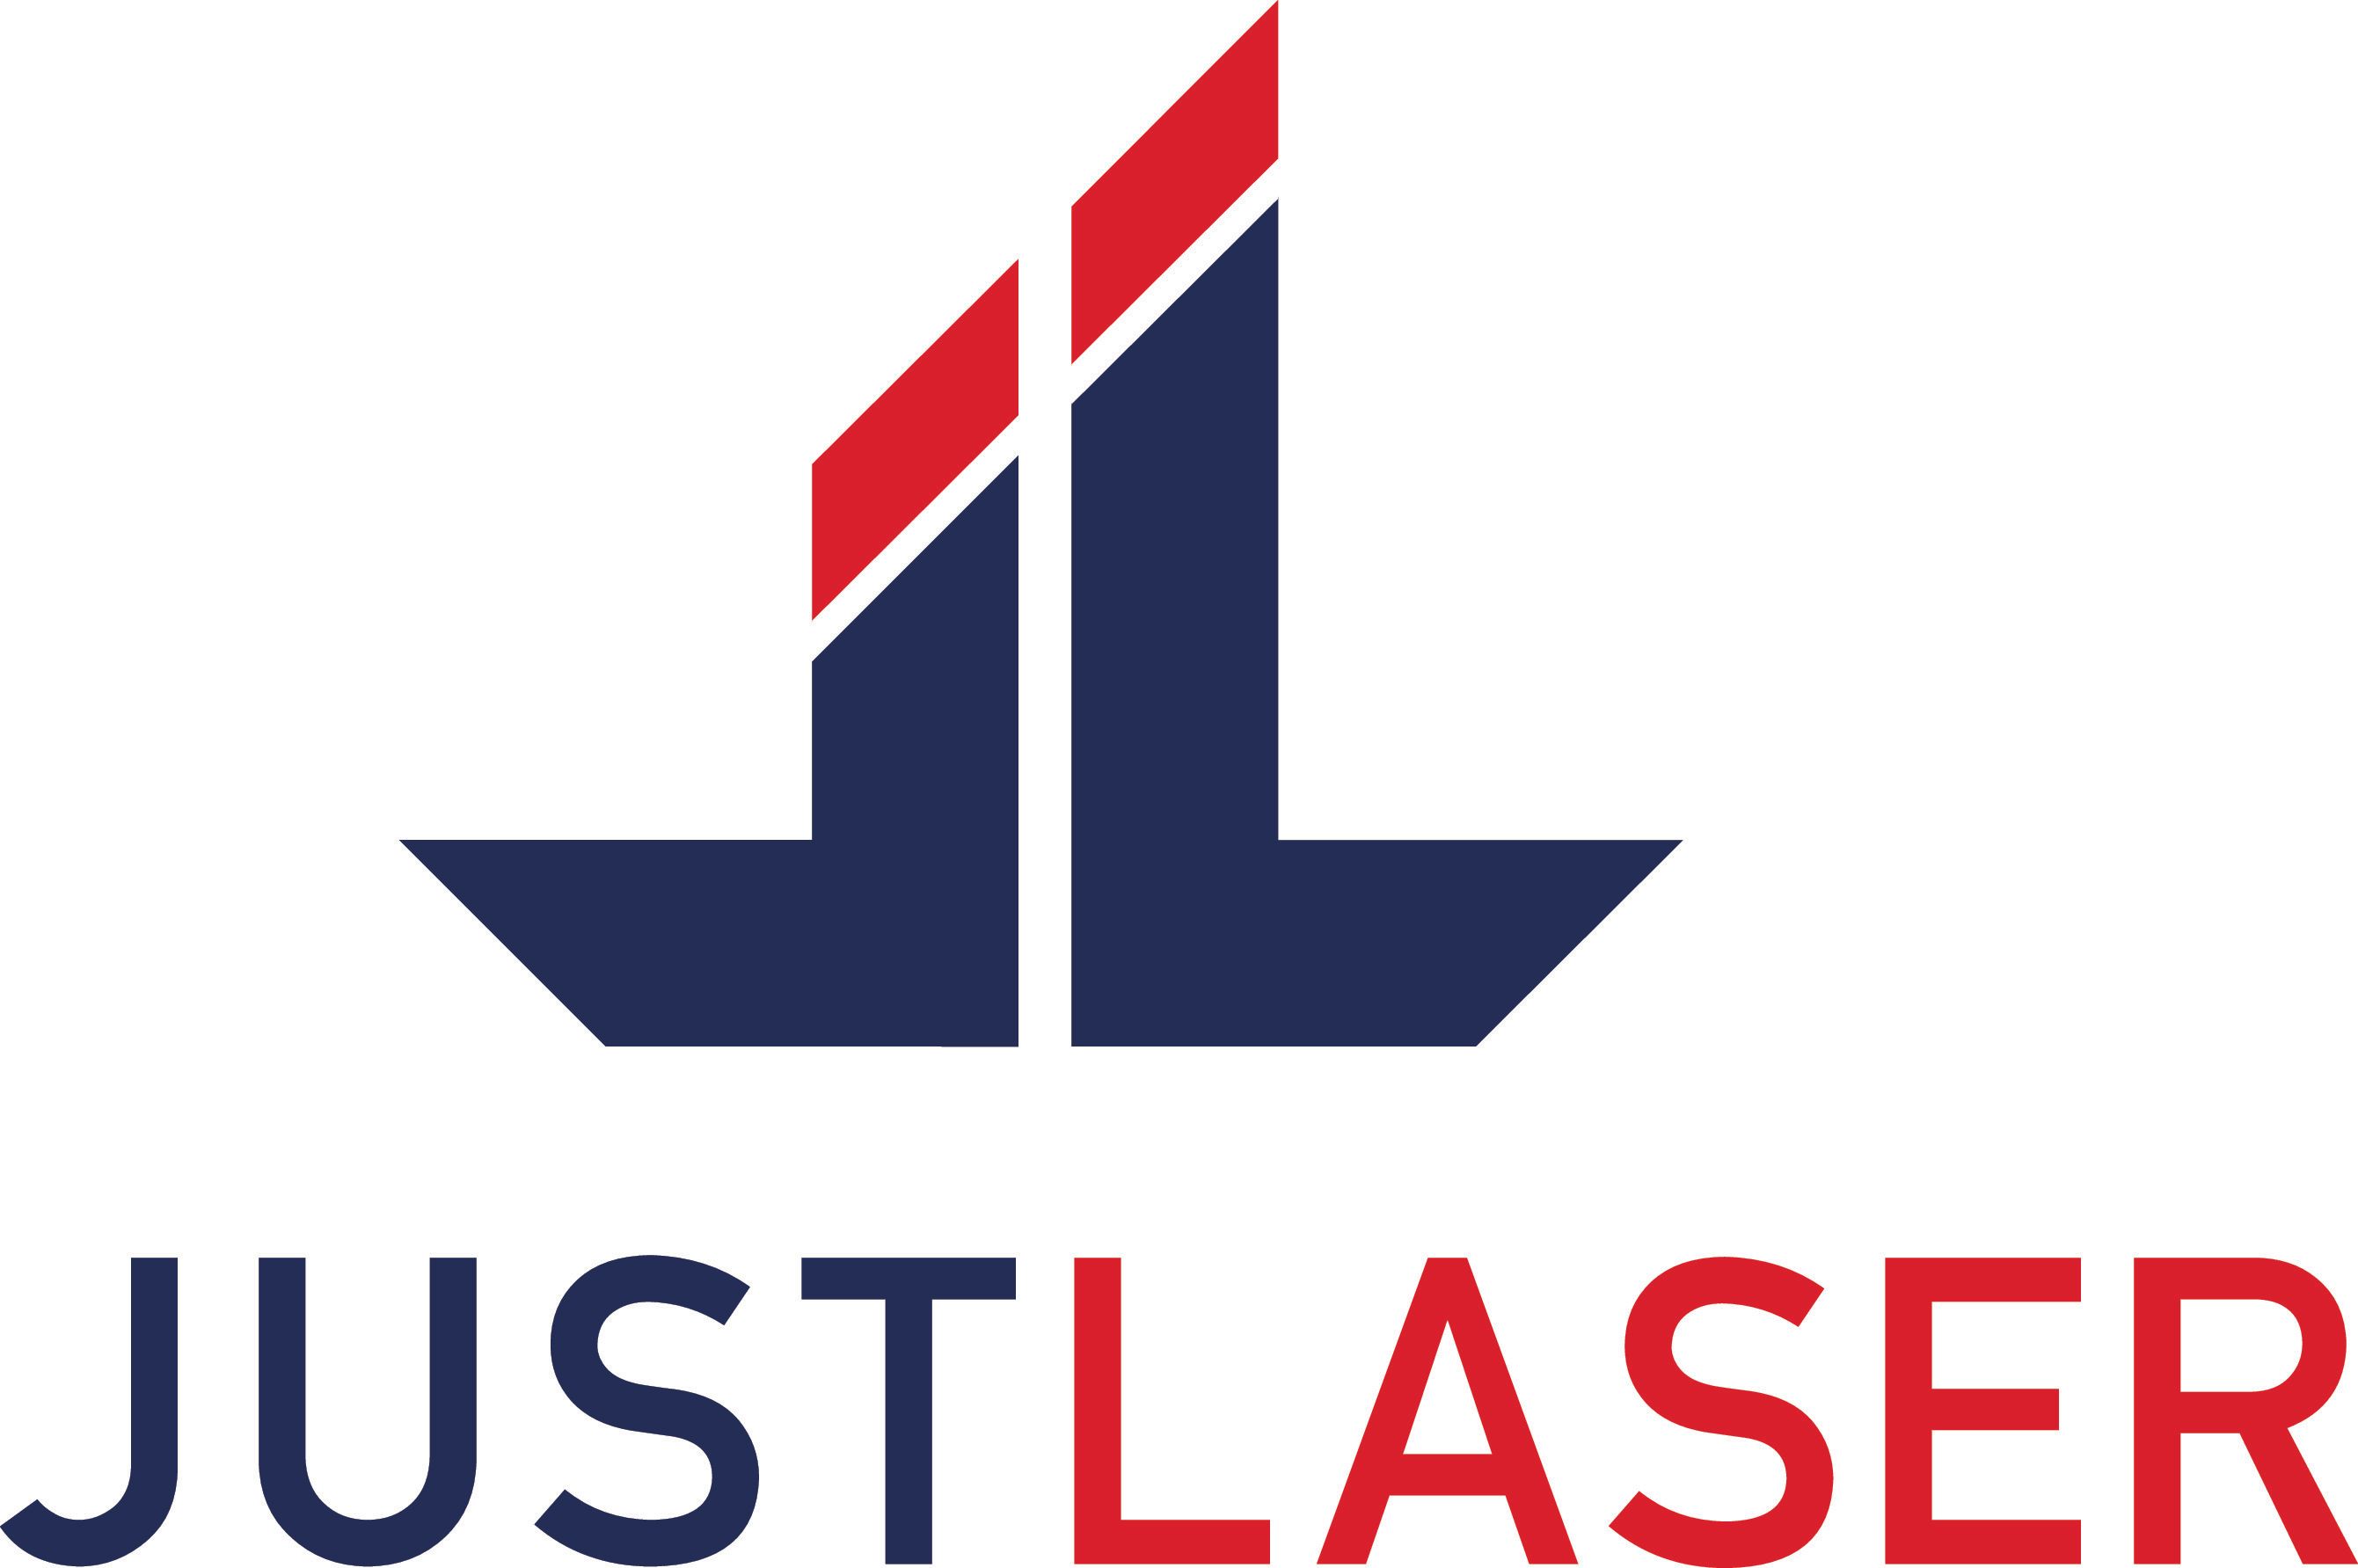 JustLaser GmbH